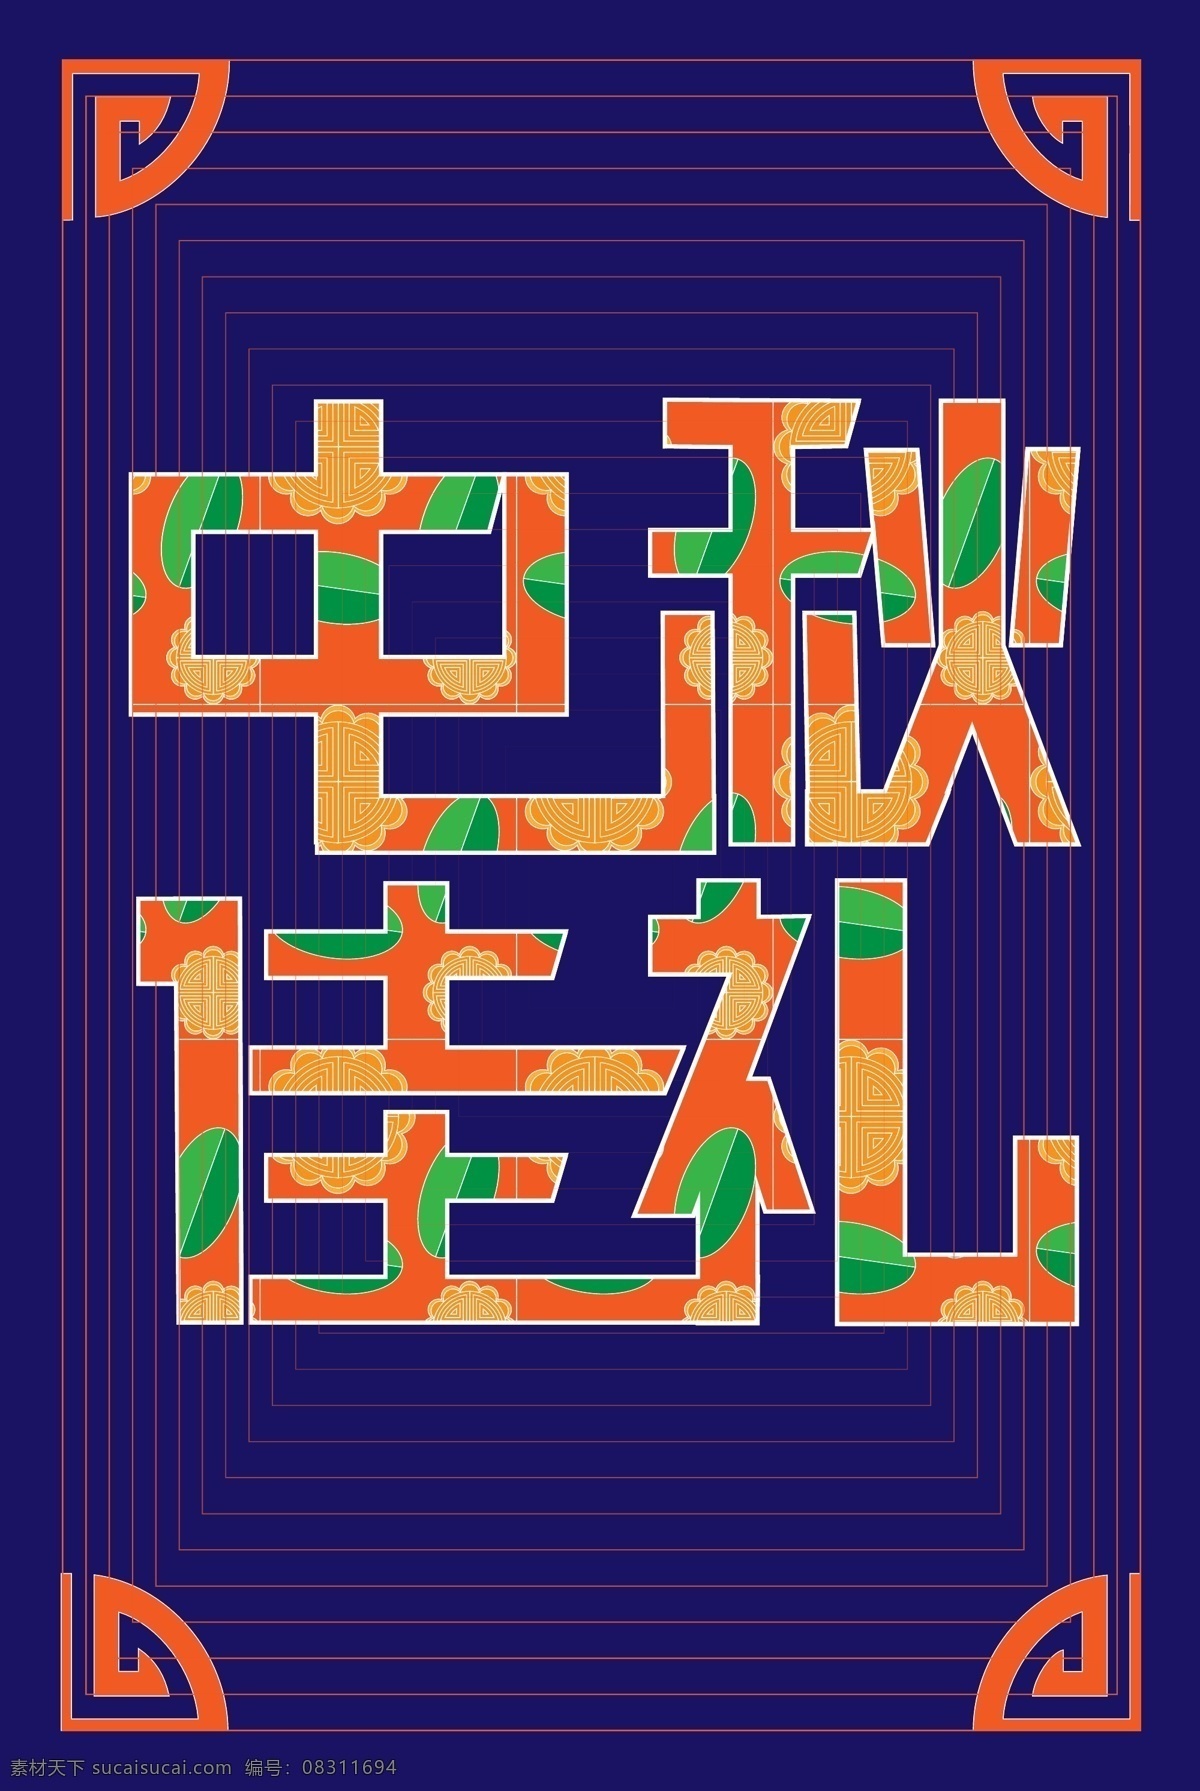 中秋 佳 礼 月饼 创意 字体 原创 食品 包装袋 中国风 佳礼 创意字体 ai矢量